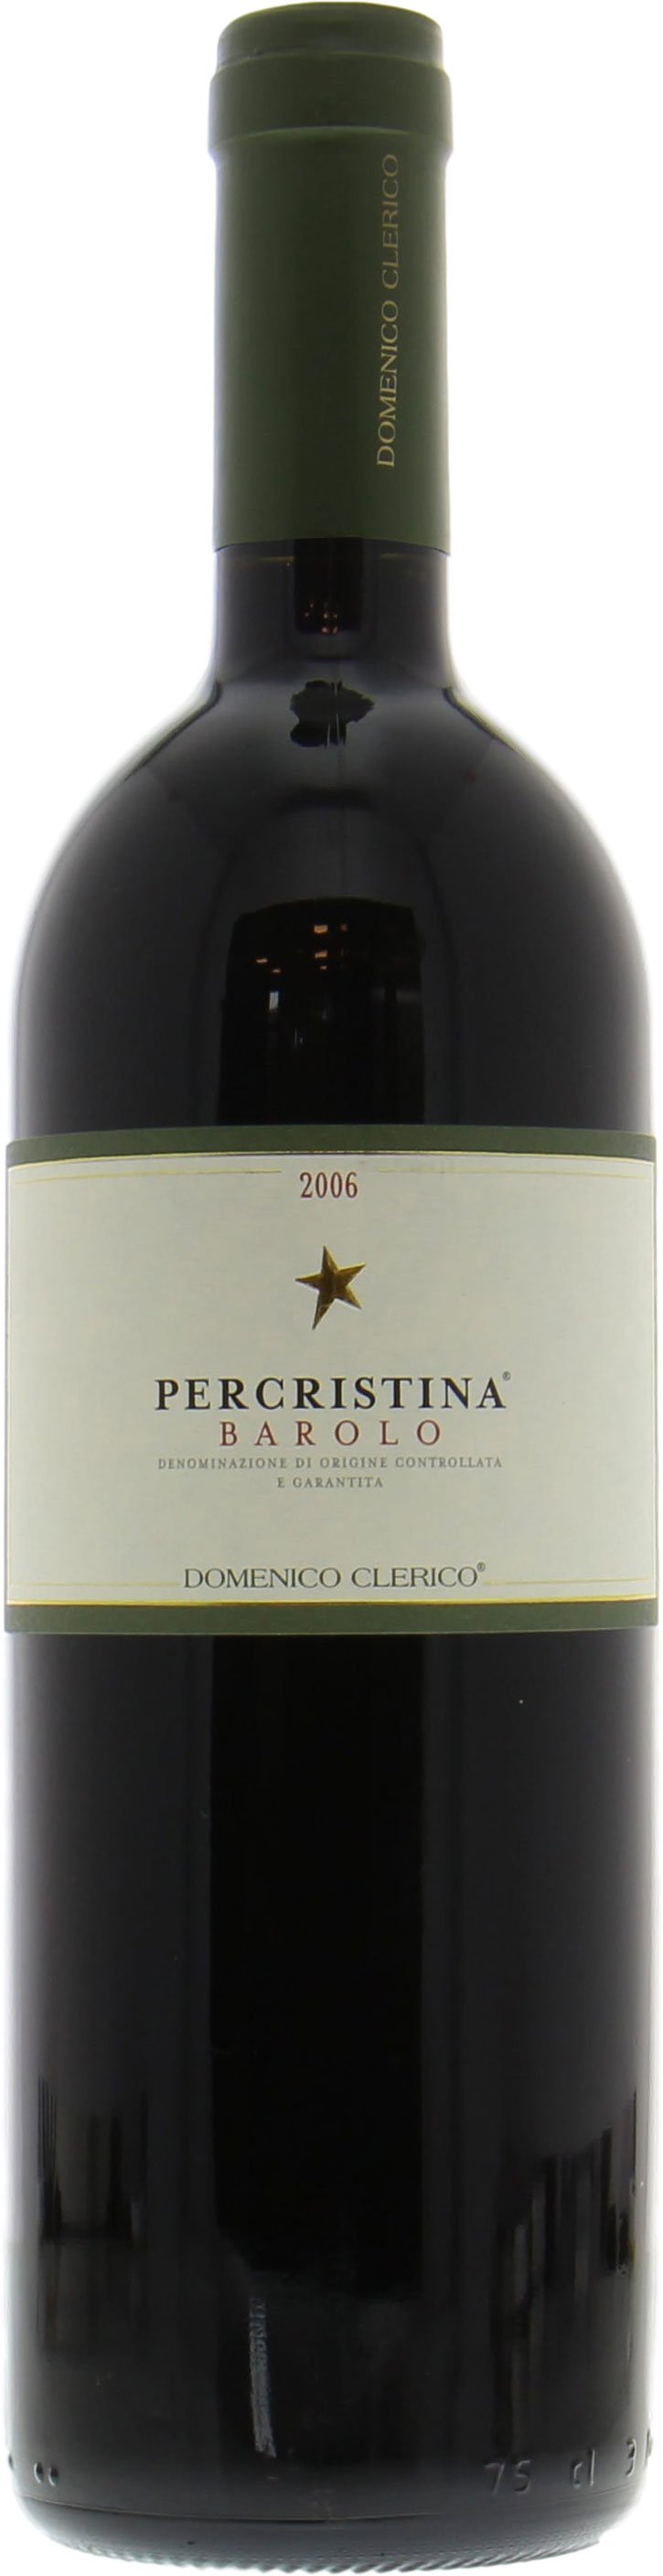 Domenico Clerico - Percristina Barolo 2006 Perfect